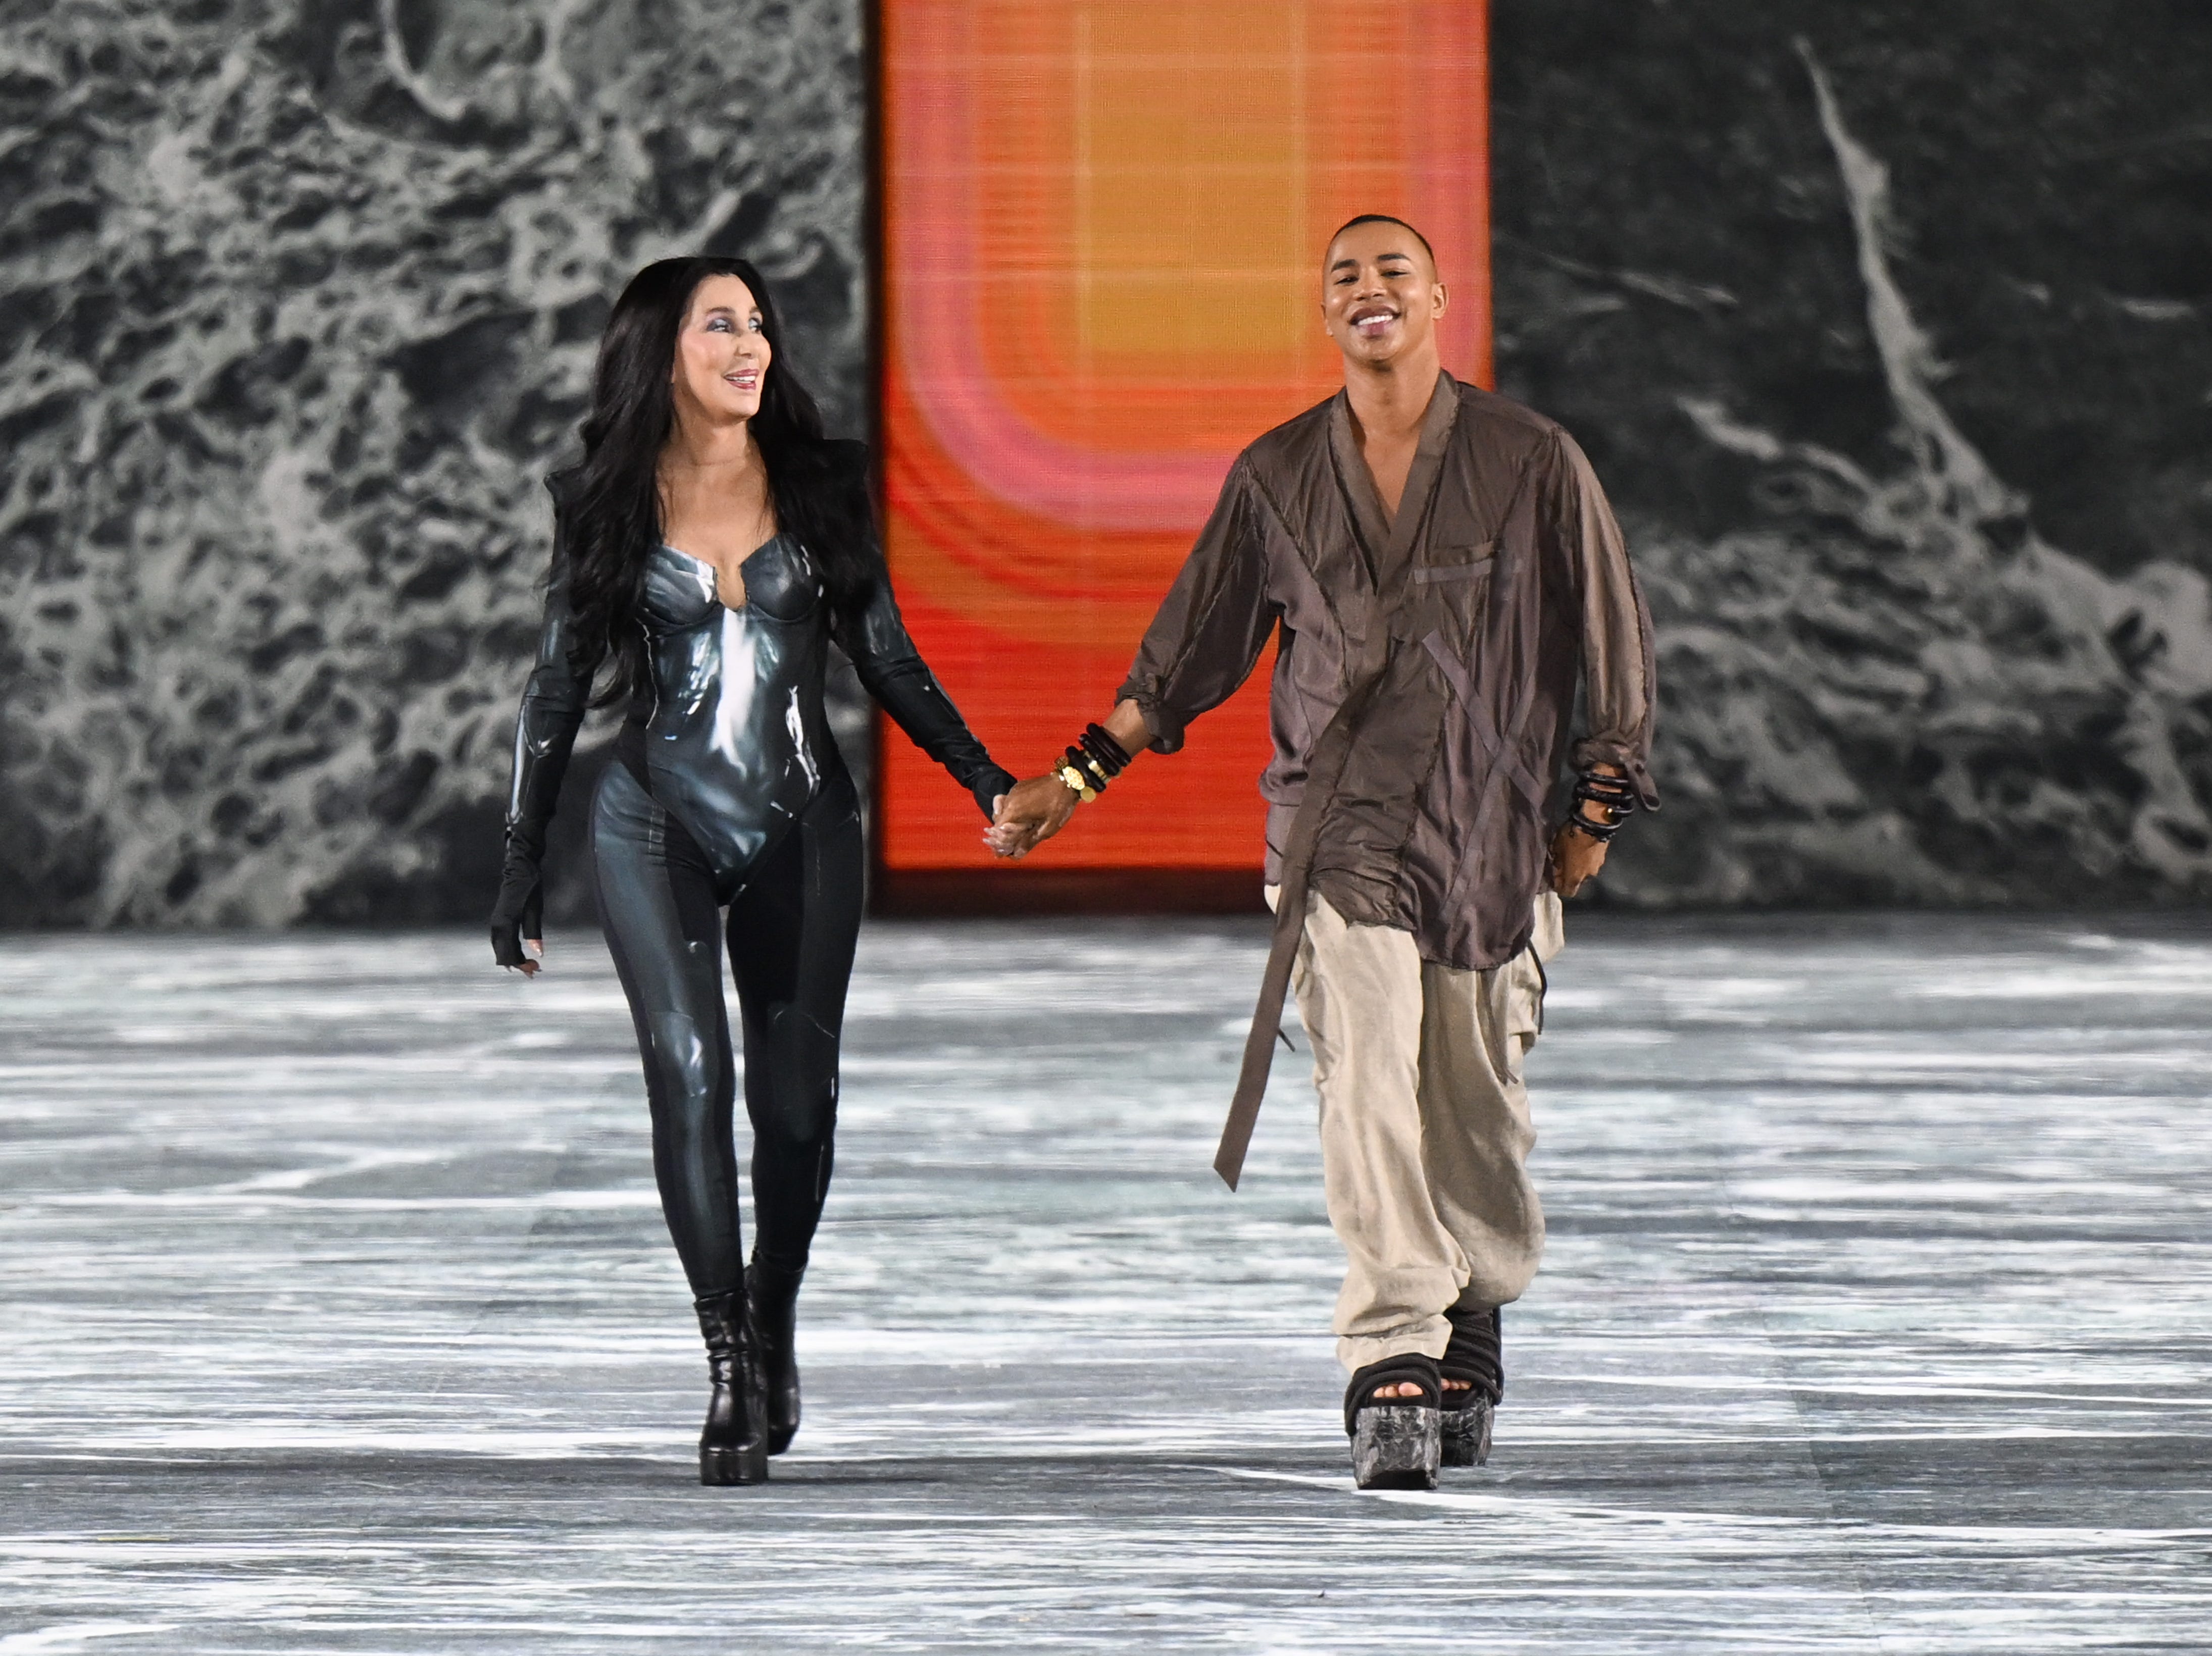 Sängerin Cher und Modedesigner Olivier Rousteing laufen während der Balmain Womenswear Spring/Summer 2023 Show im Rahmen des Balmain Festival V03 während der Paris Fashion Week am 28. September 2022 in Paris, Frankreich, über den Laufsteg